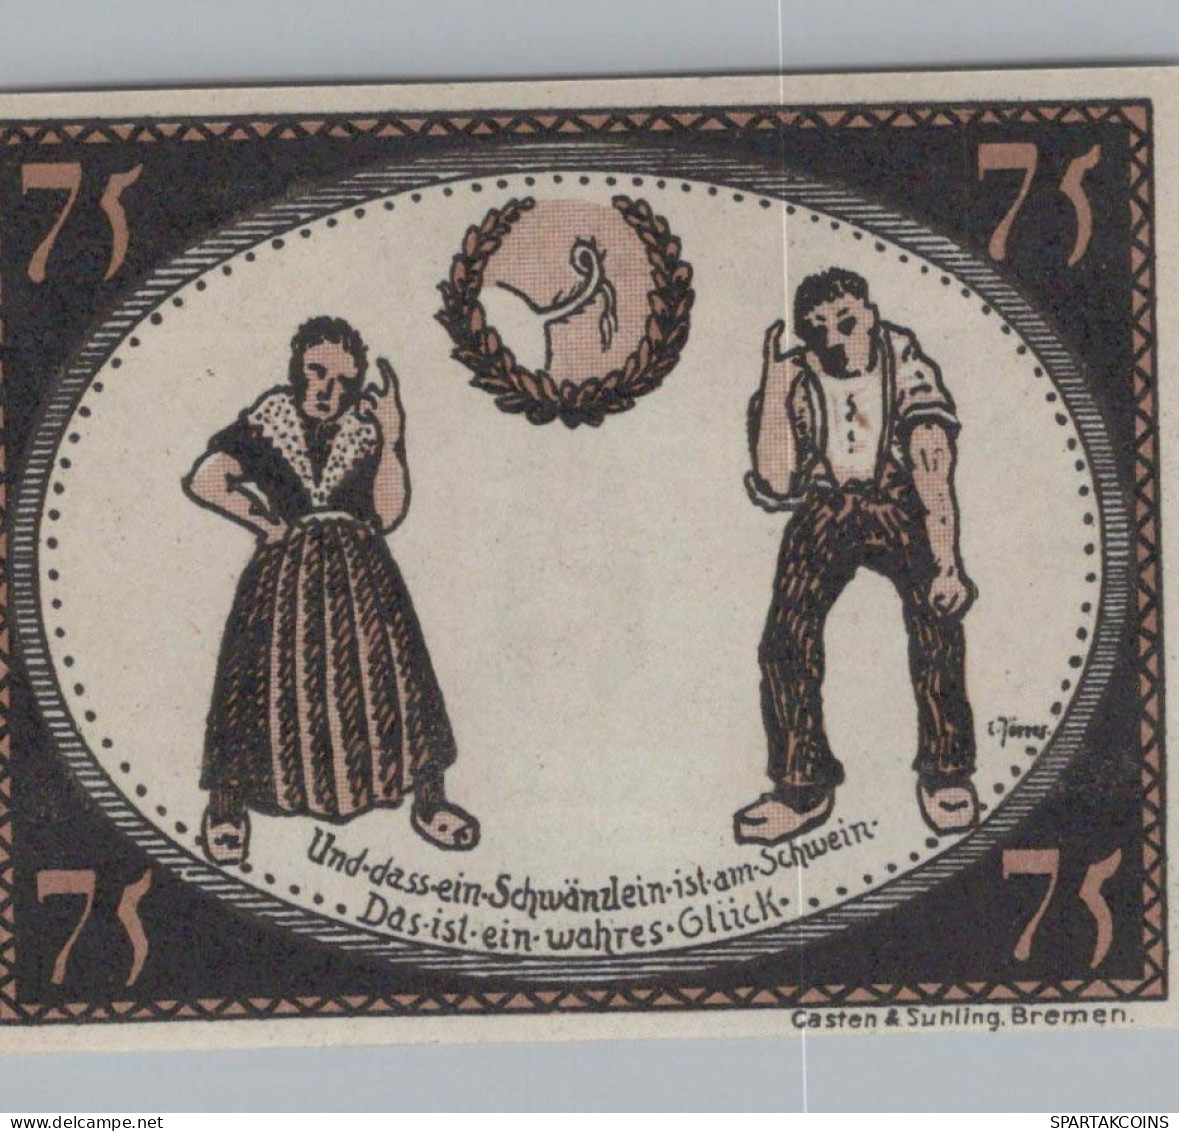 75 PFENNIG 1921 Stadt DIEPHOLZ Hanover UNC DEUTSCHLAND Notgeld Banknote #PA460 - [11] Emisiones Locales